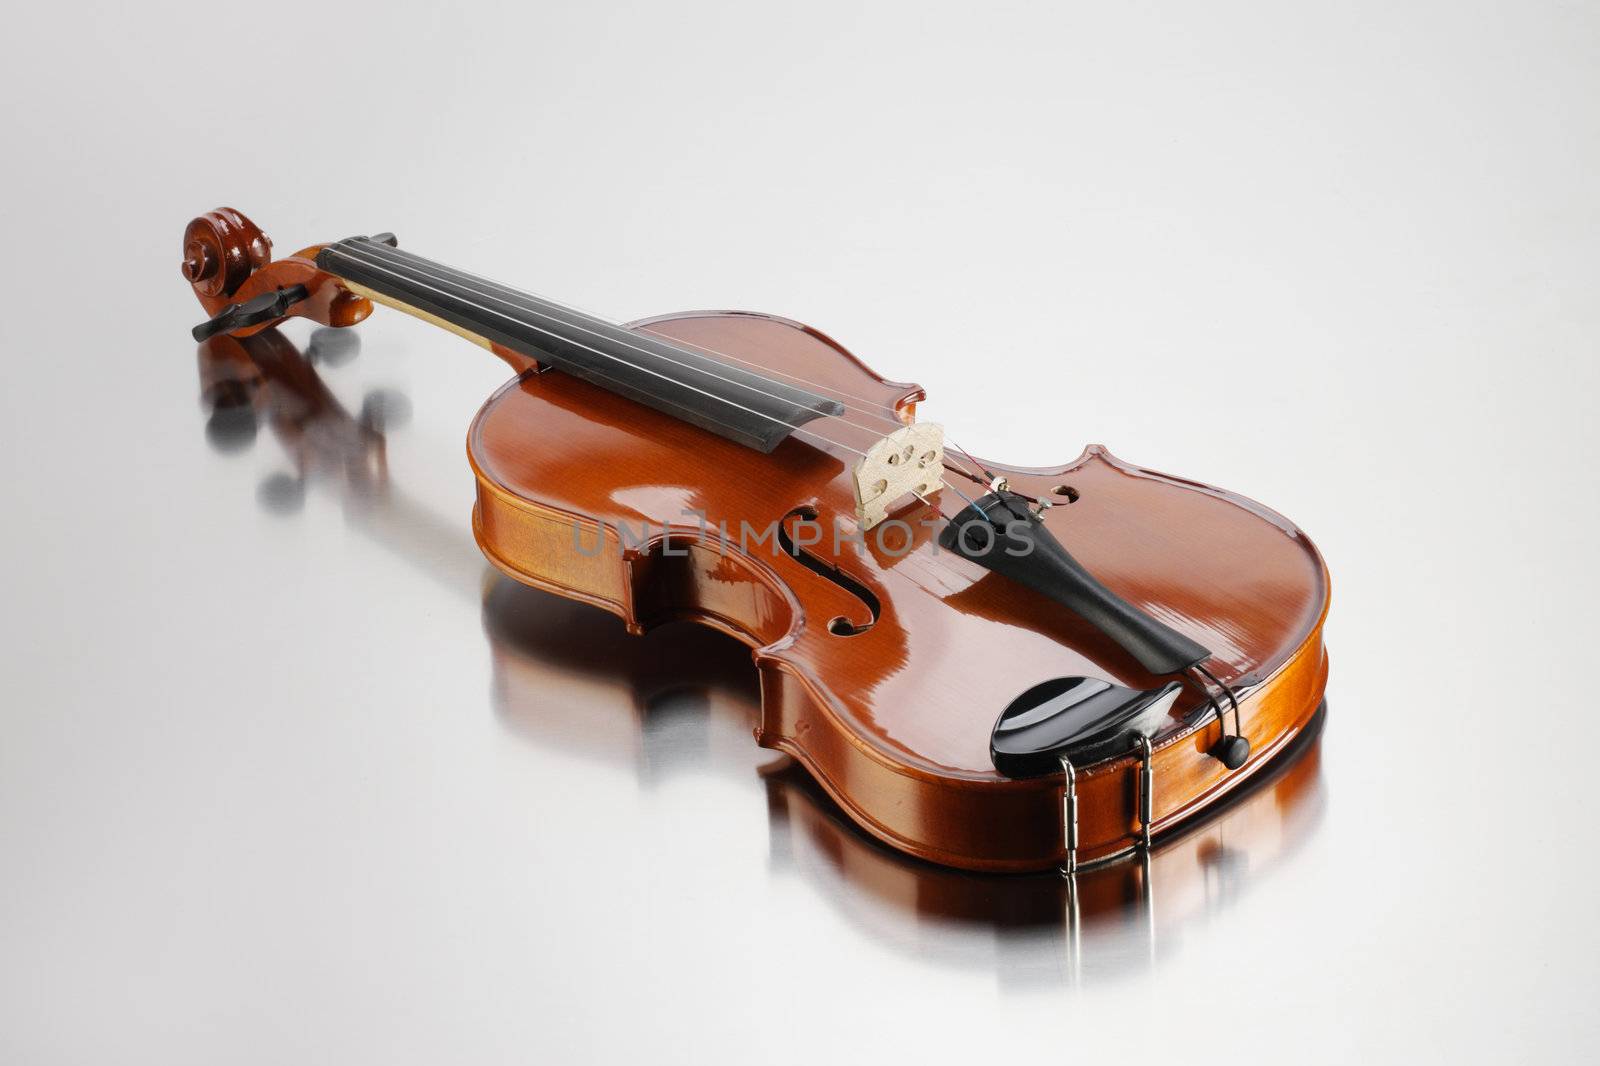 Elegant shot of a violin